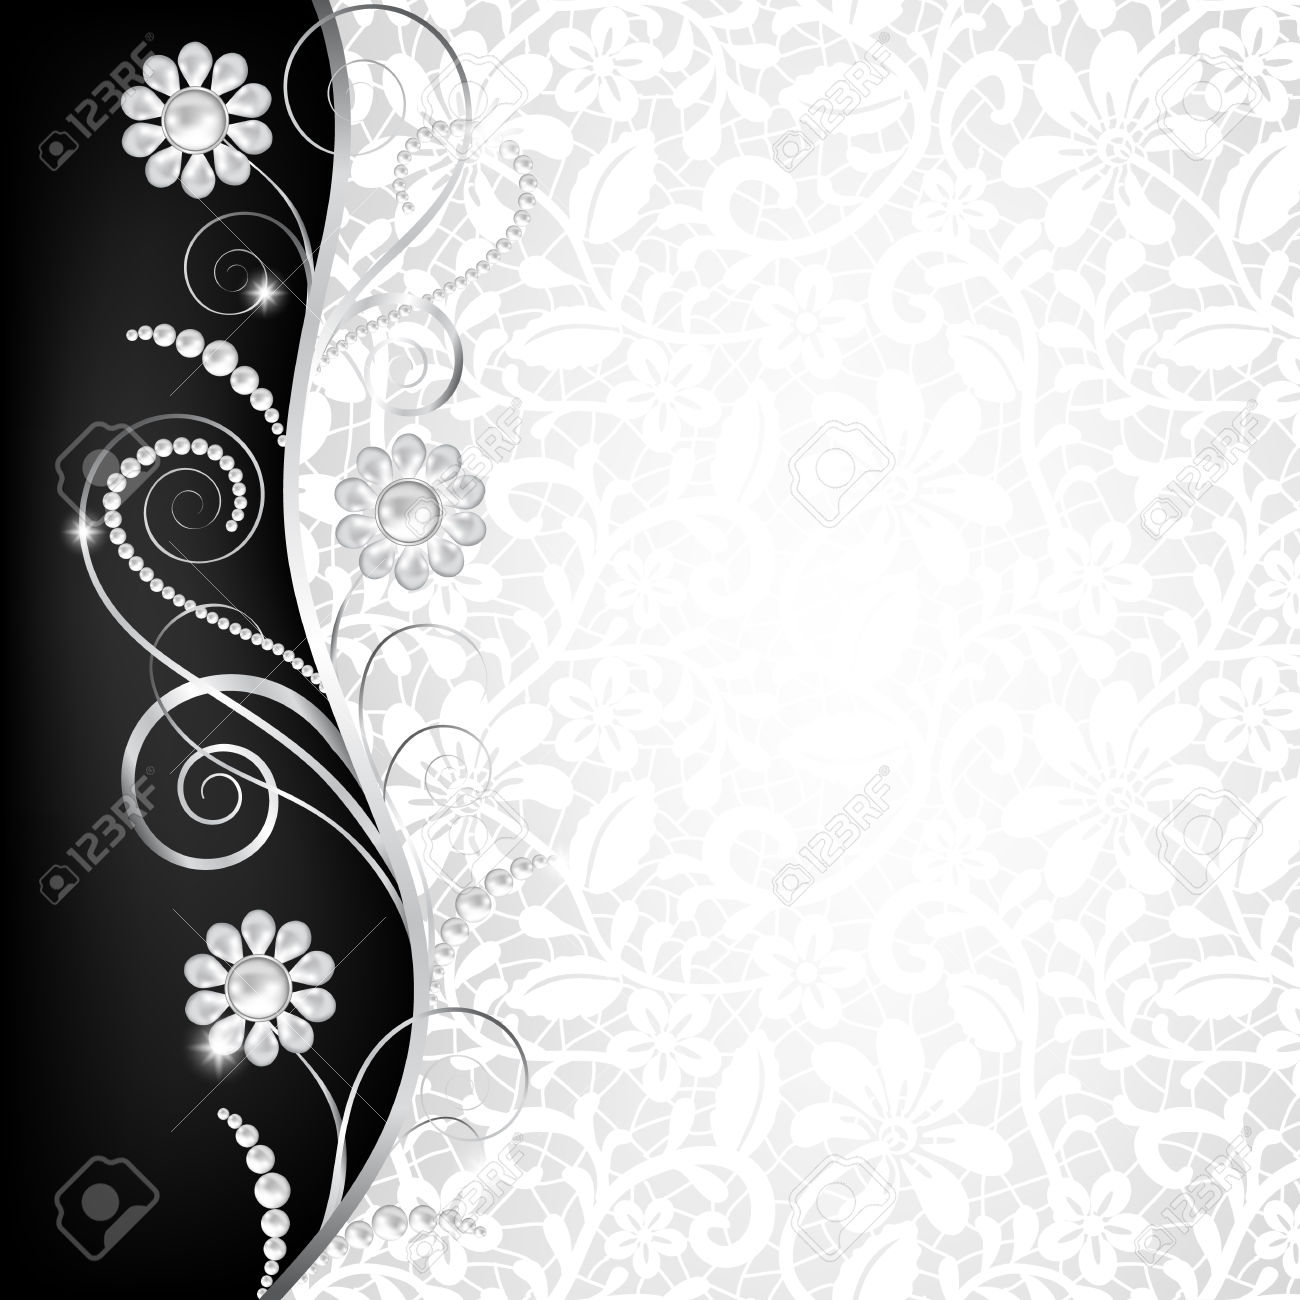 fond d'écran vip hd,texte,modèle,noir et blanc,conception,art floral